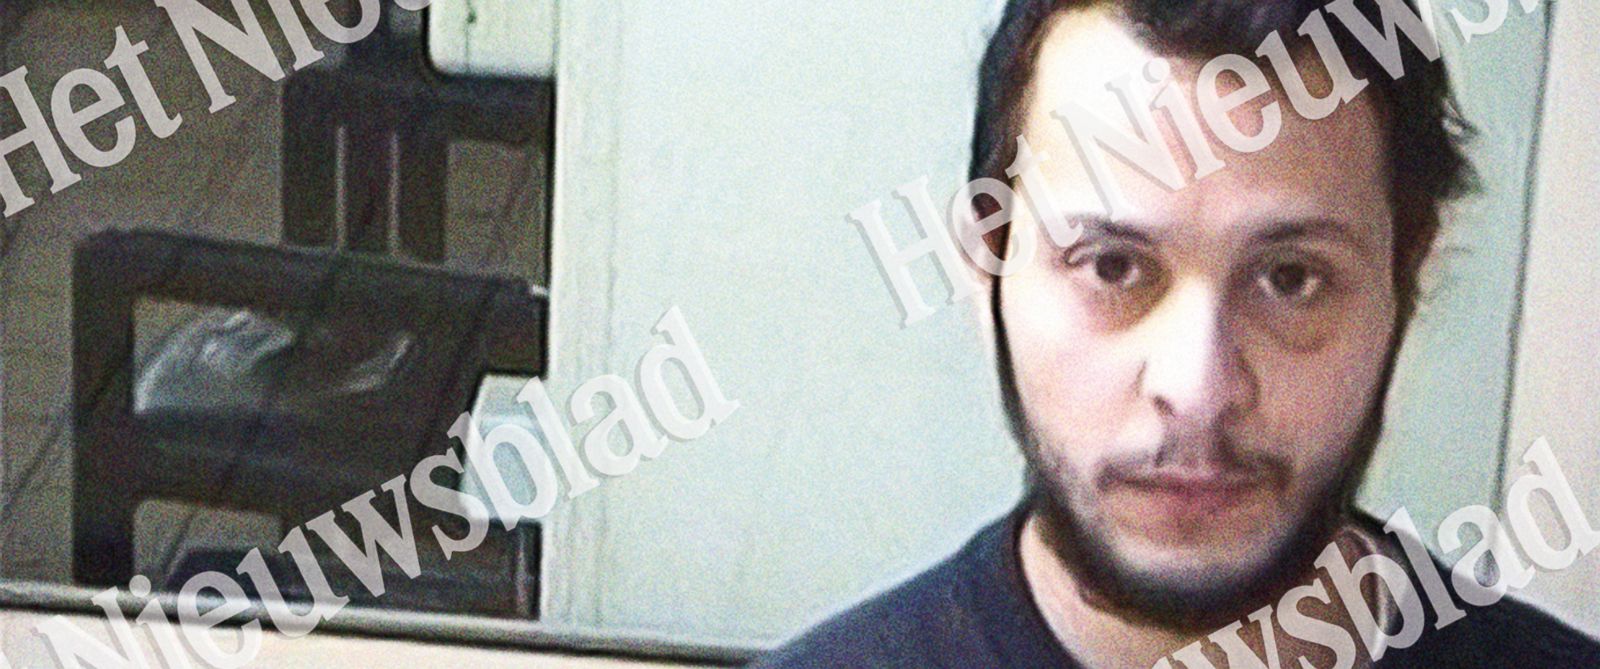 New Picture of Paris Terror Suspect Salah Abdeslam in Prison